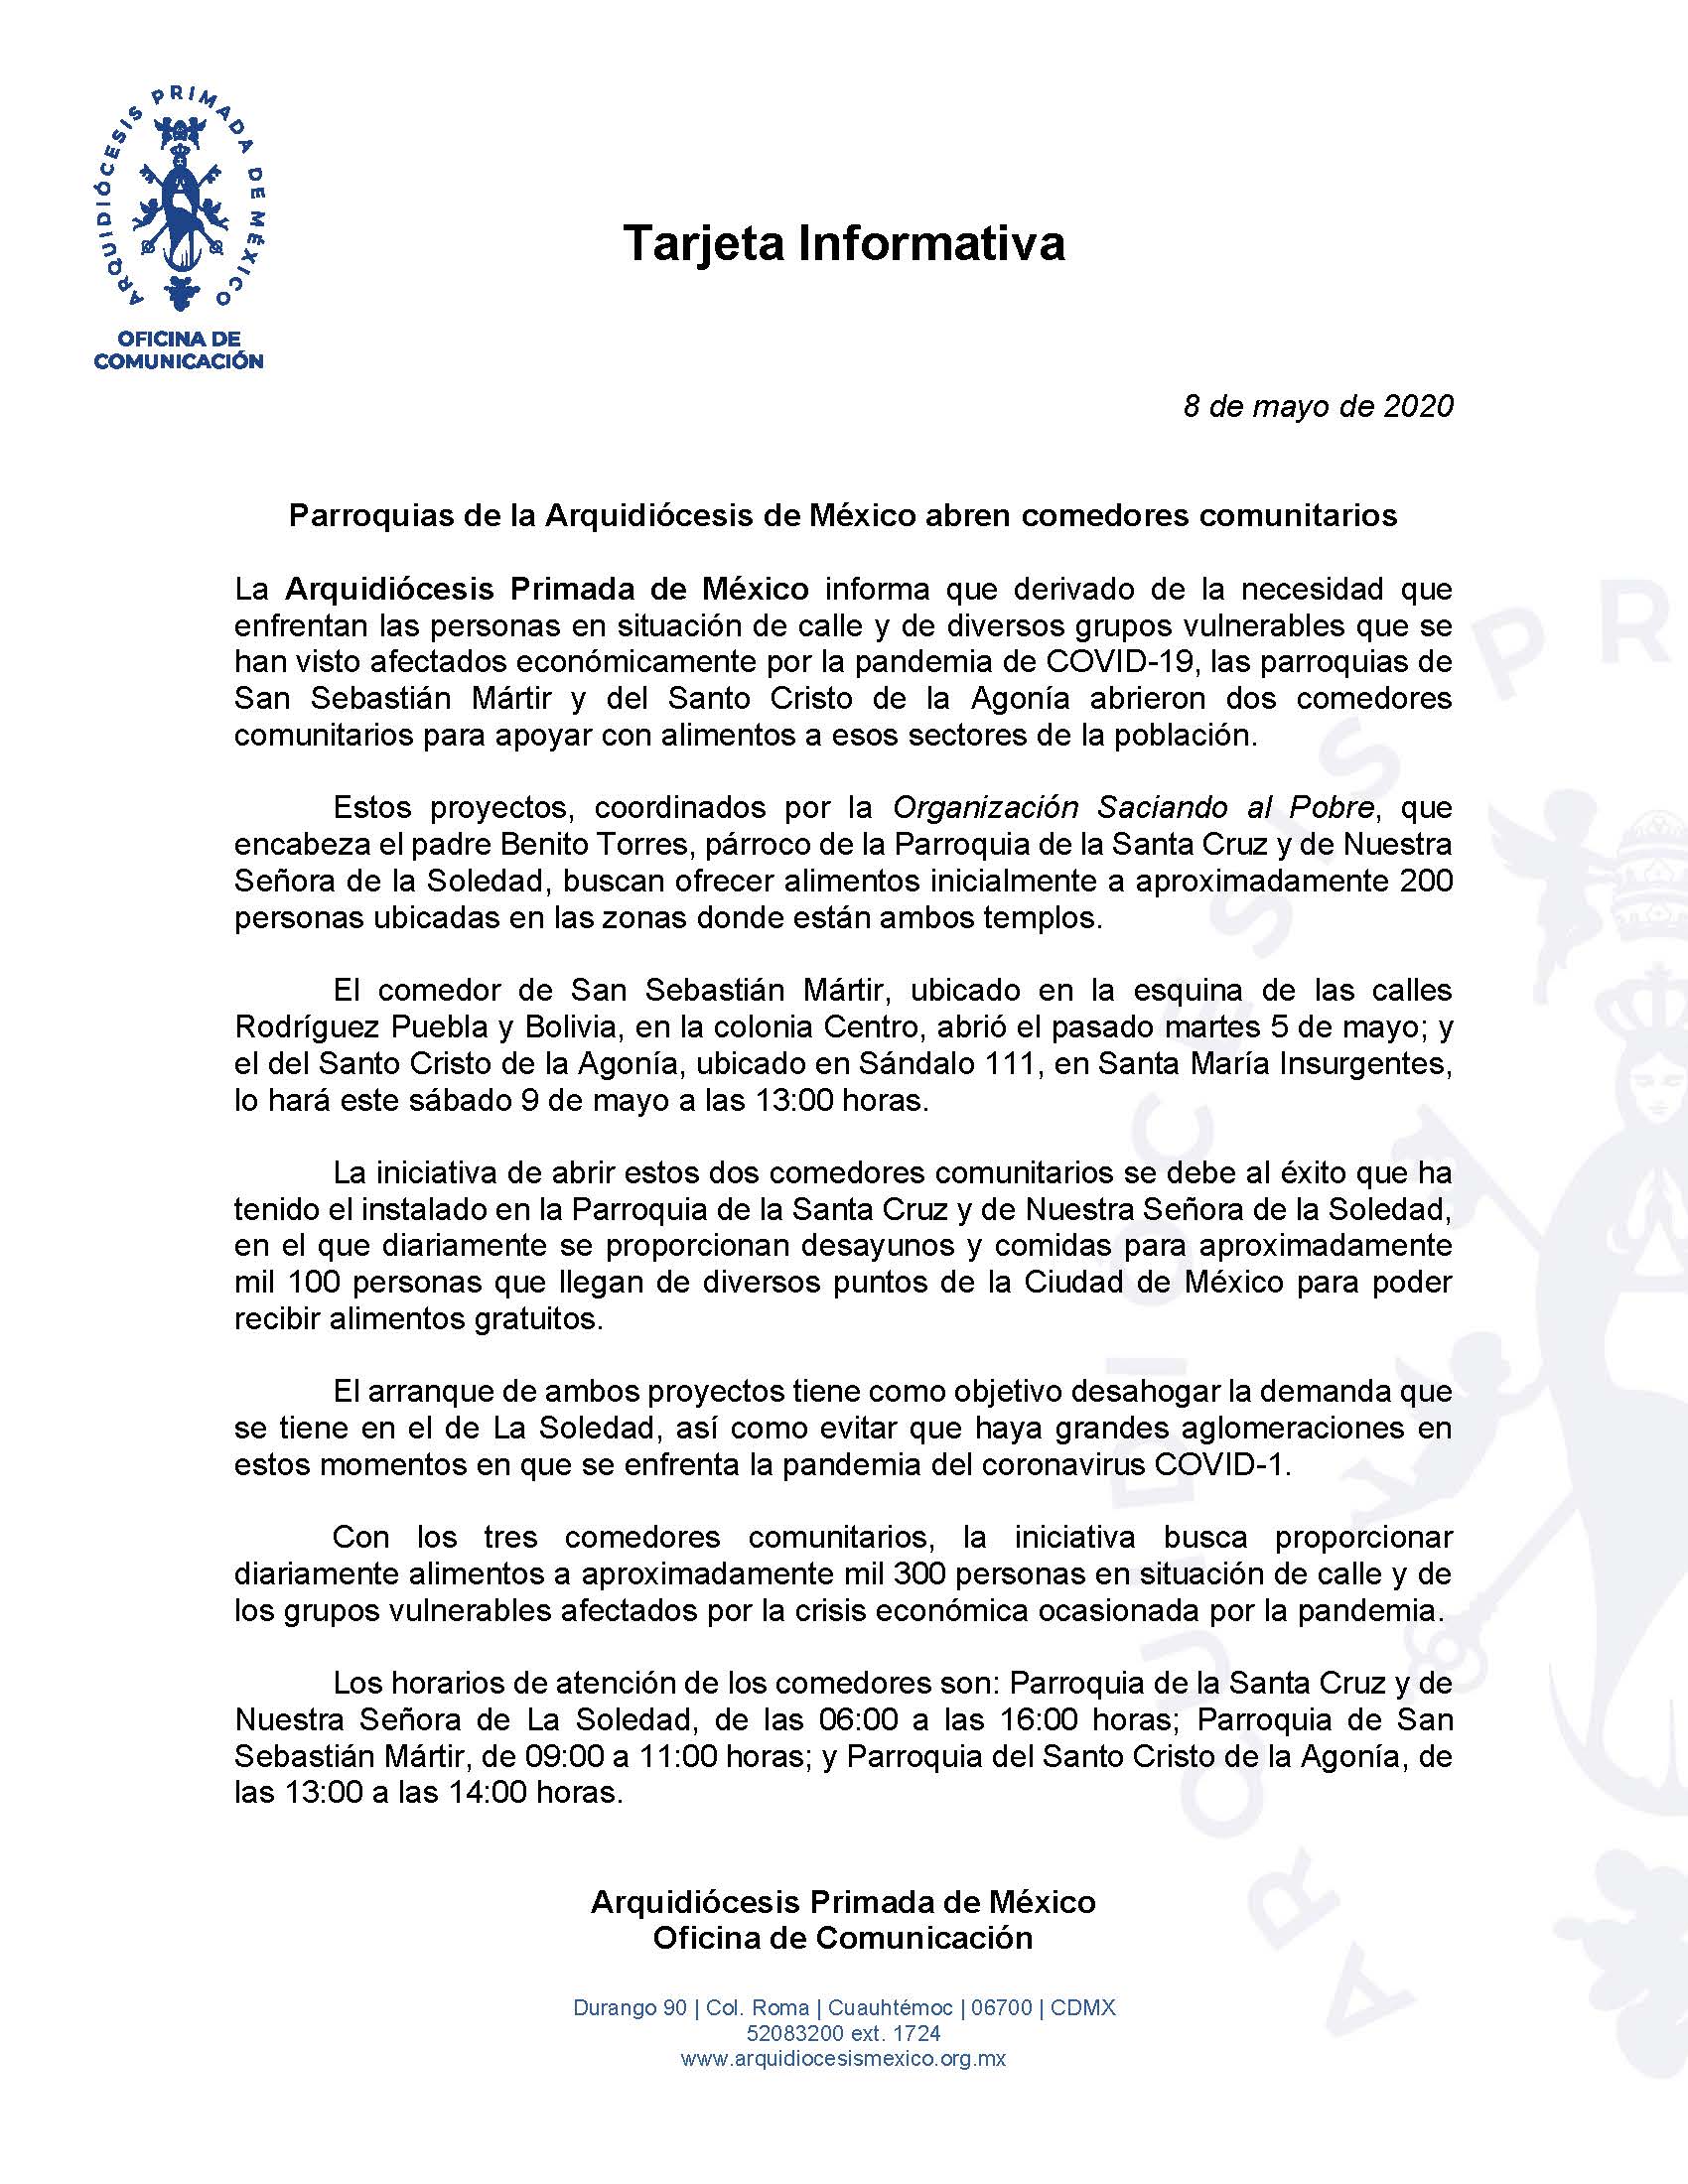 200508 Arquidiocesis Primada de Mexico Tarjeta Informativa Comedores Comunitarios